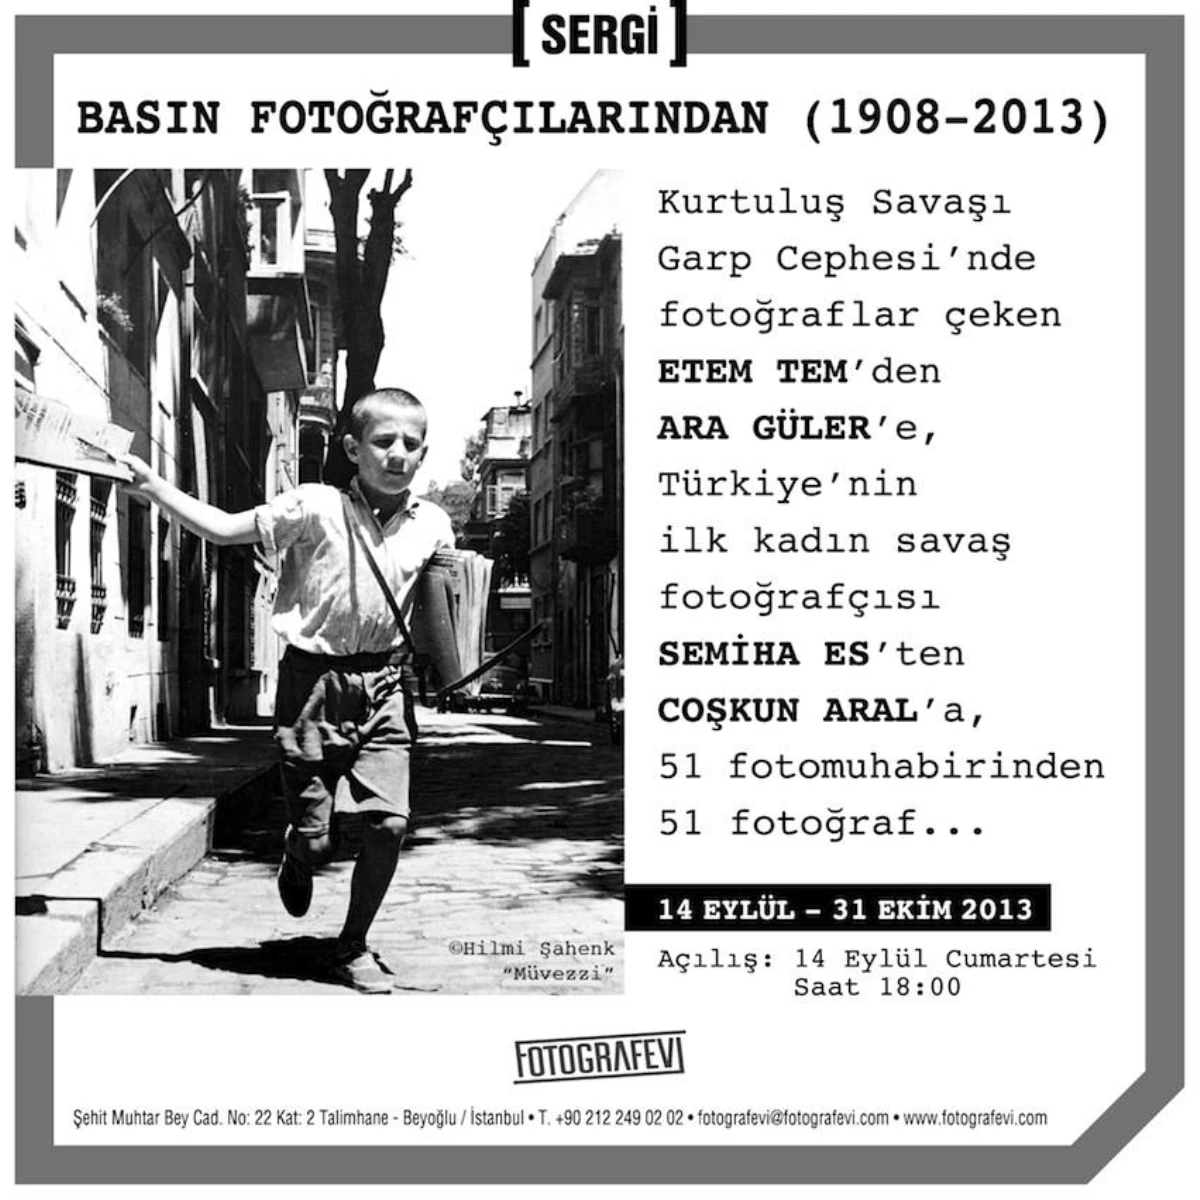 "Basın Fotoğrafçılarından (1908-2013)" Sergisi